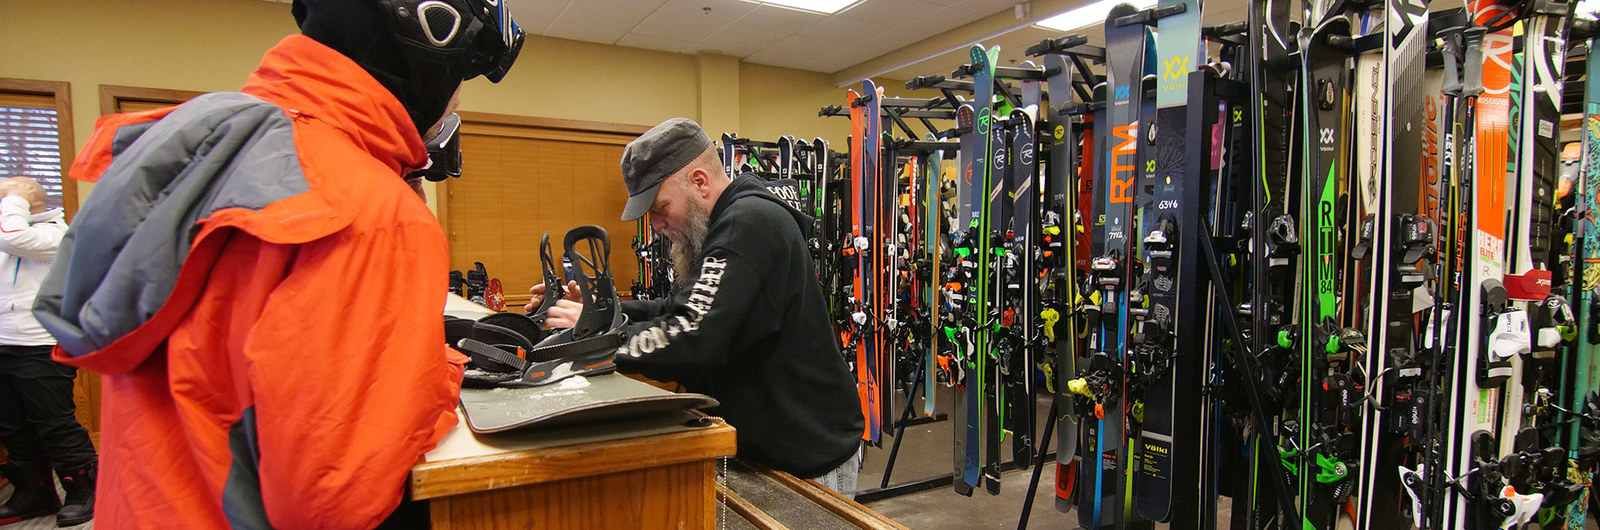 Ski repair counter at Holiday Valley rental shop